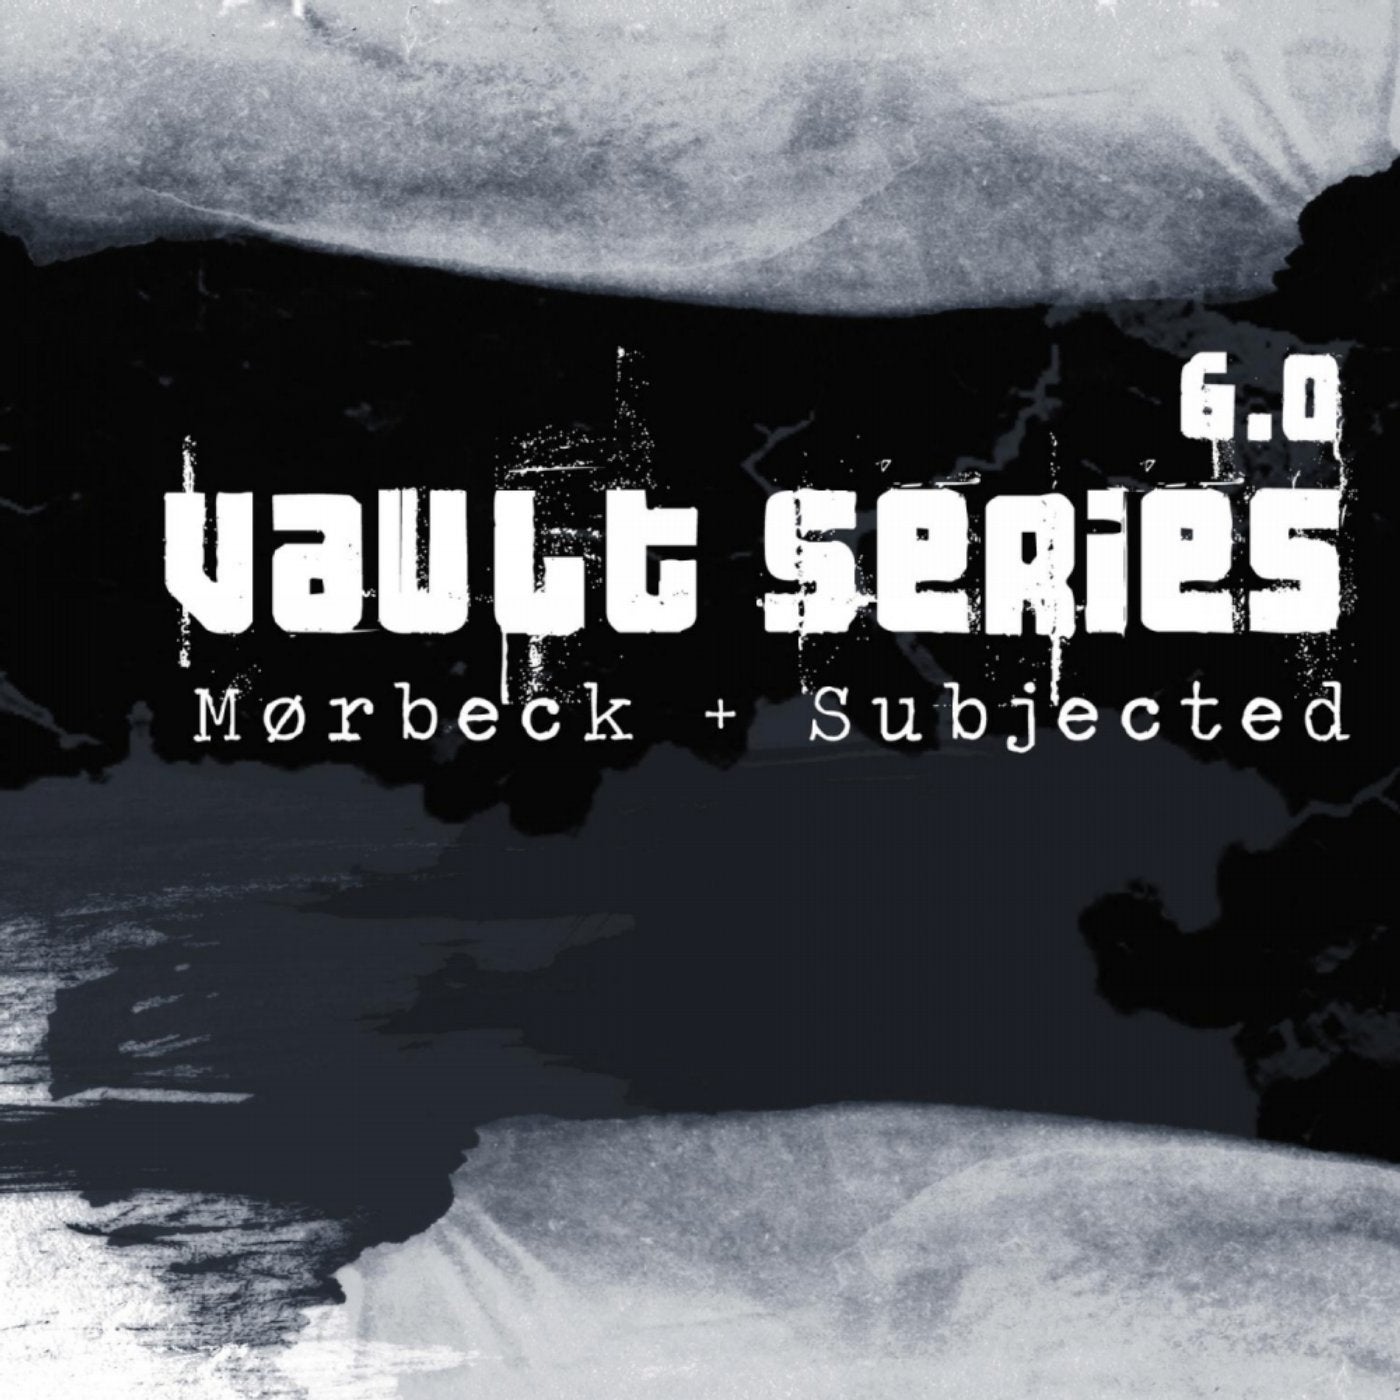 Vault Series 6.0